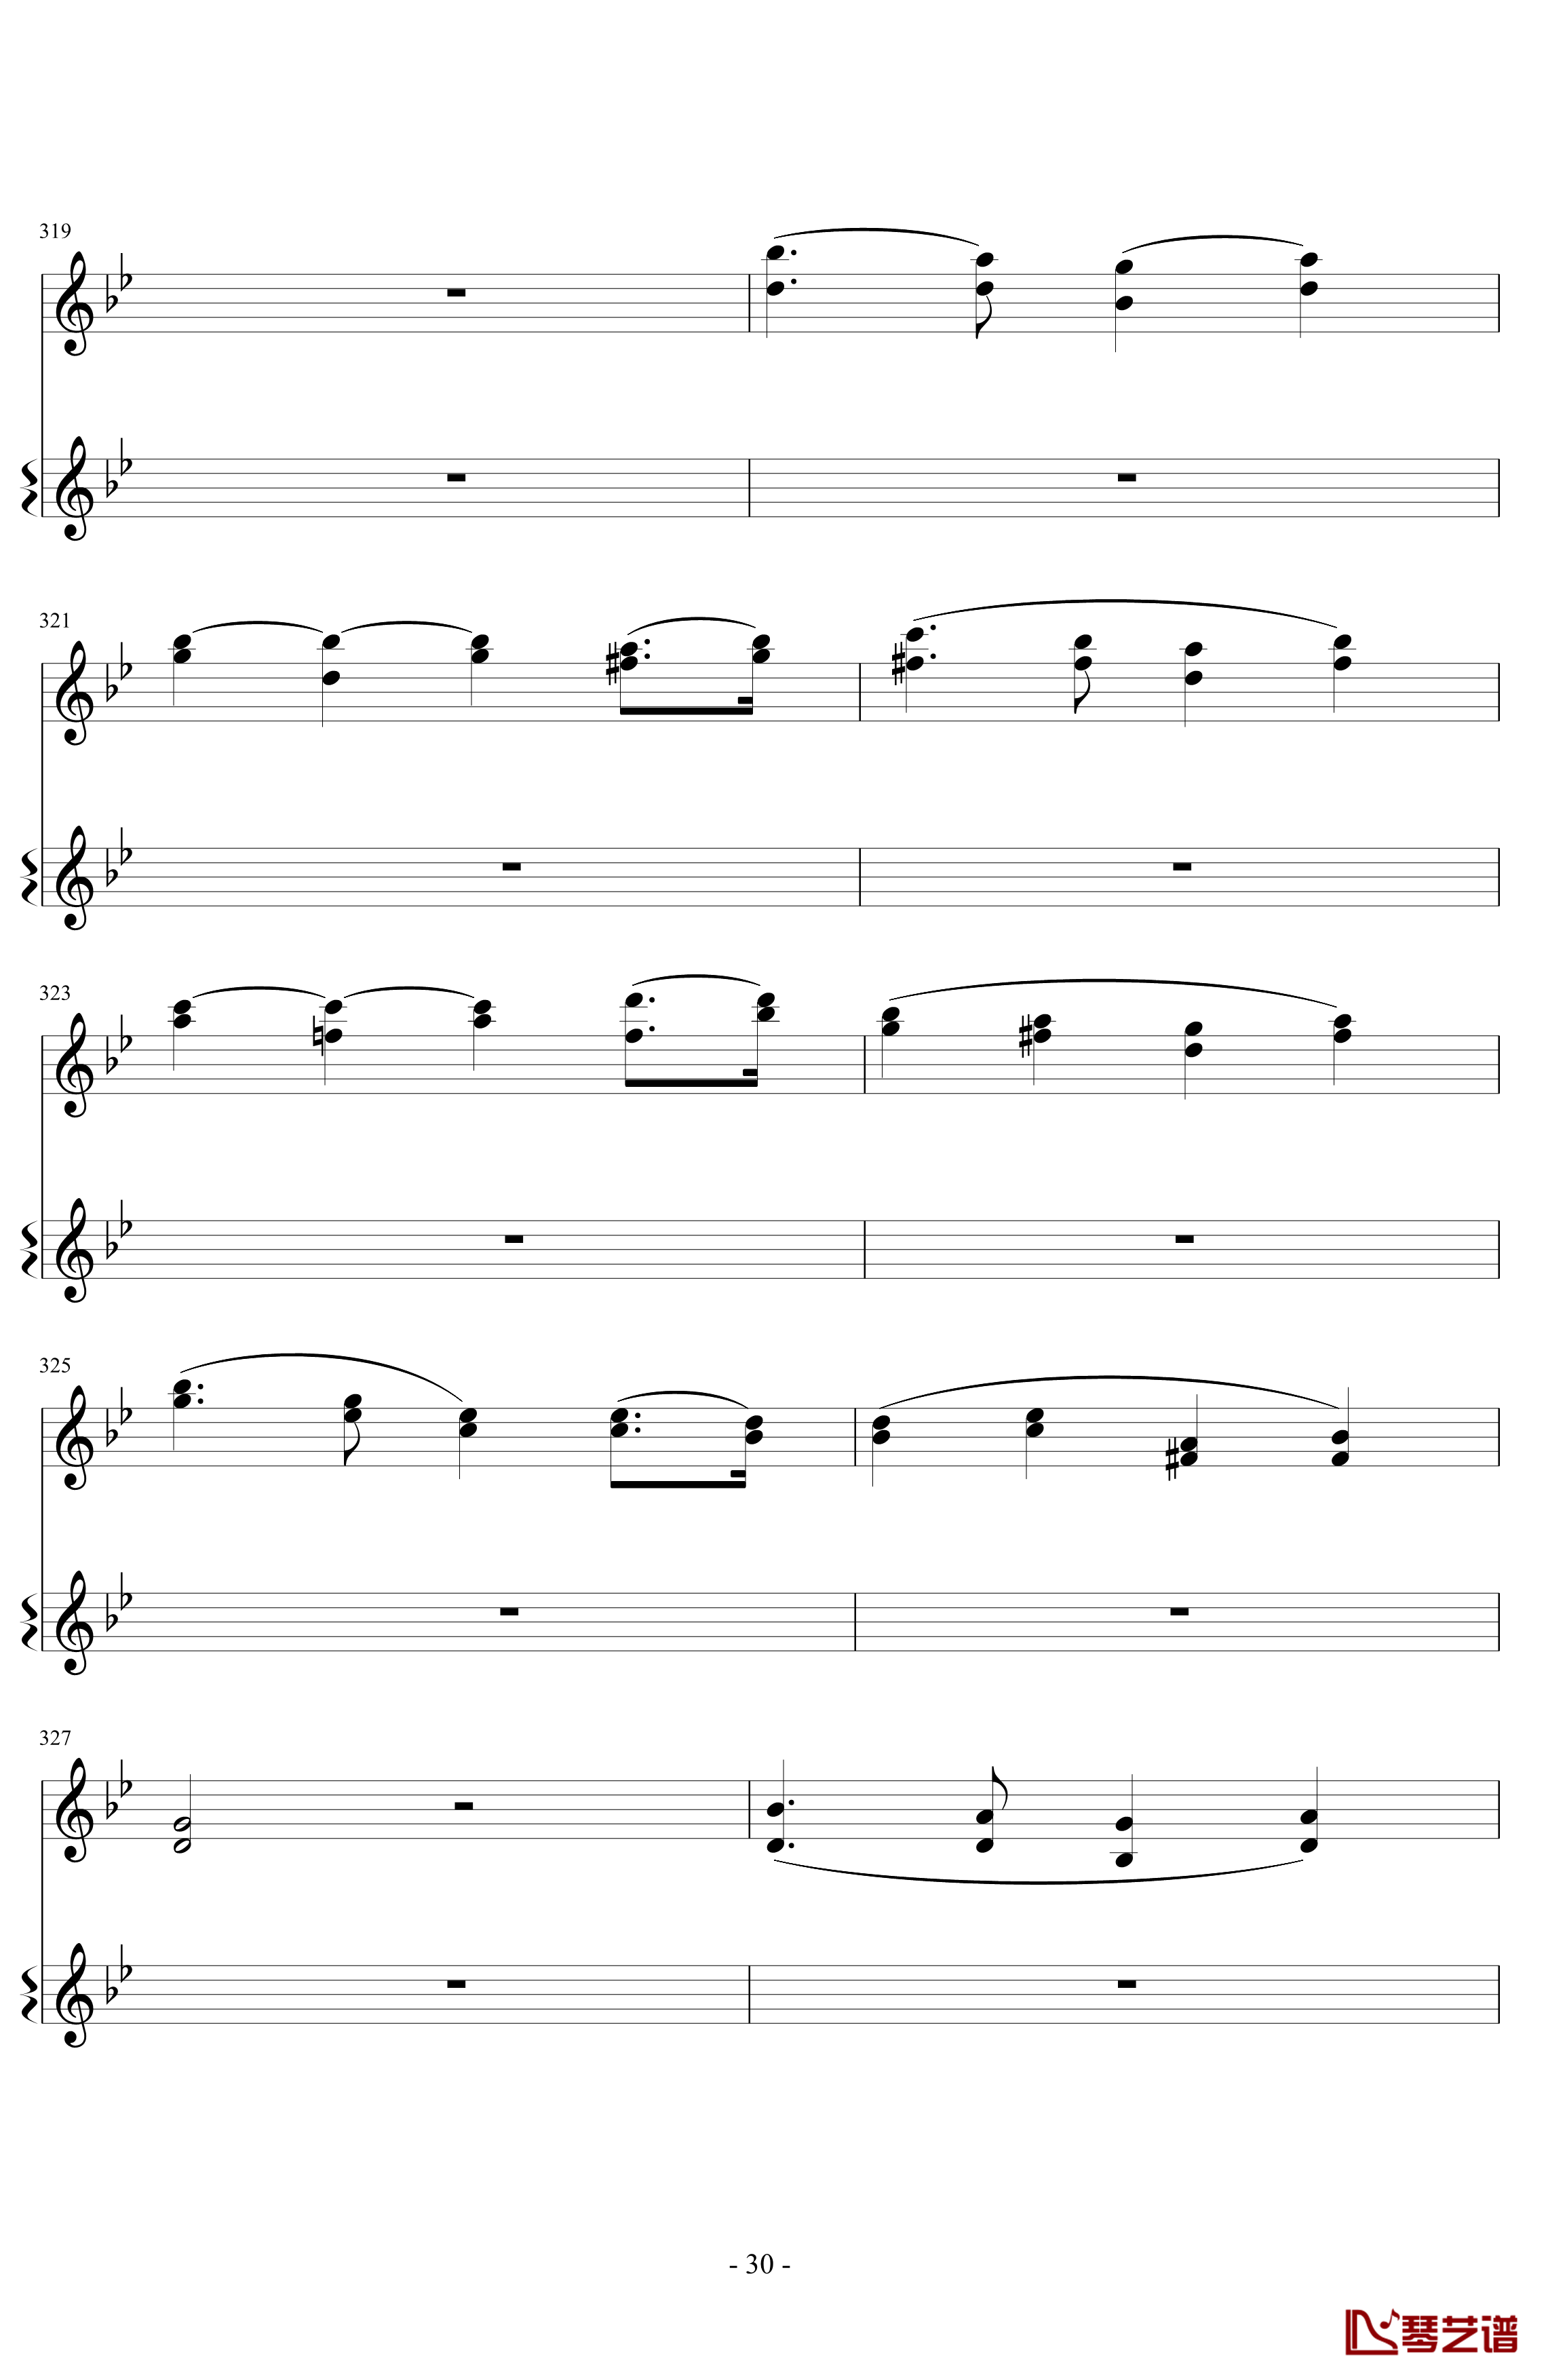 意大利国歌变奏曲钢琴谱-DXF30